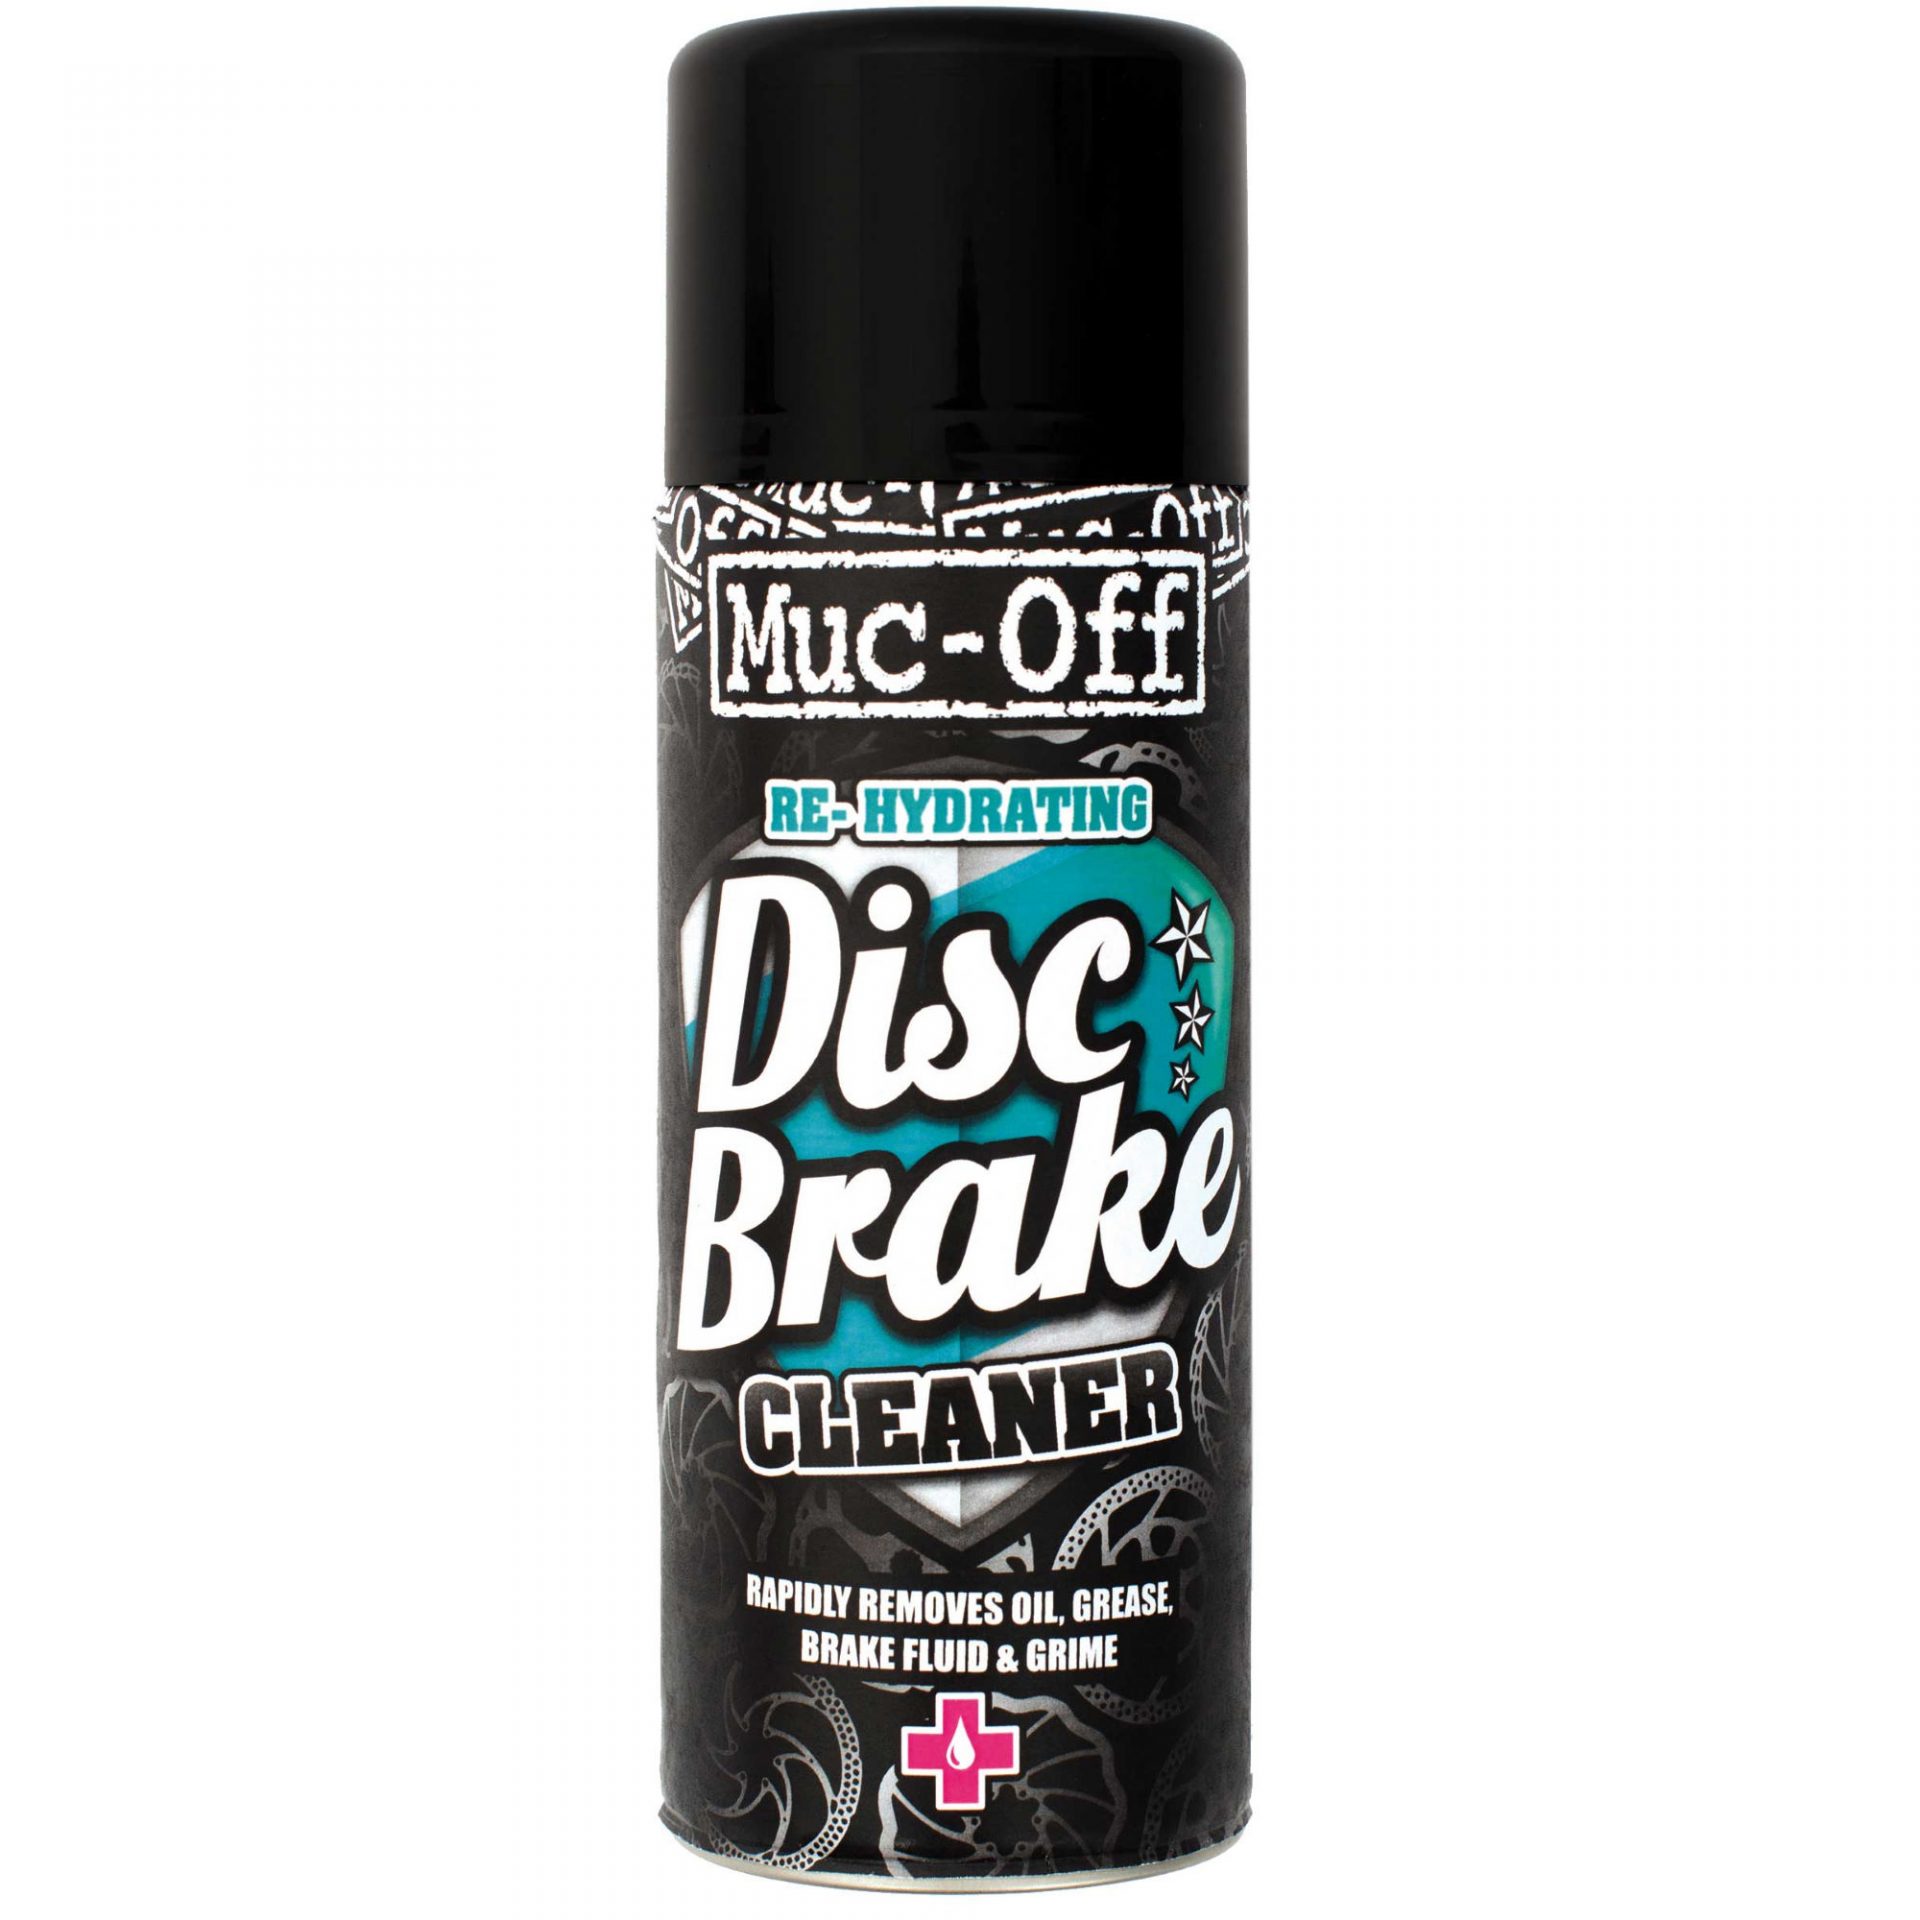 Muc-Off-Disc-Brake-Cleaner-400ml-Aerosol-Bike-Cleaner-913-0